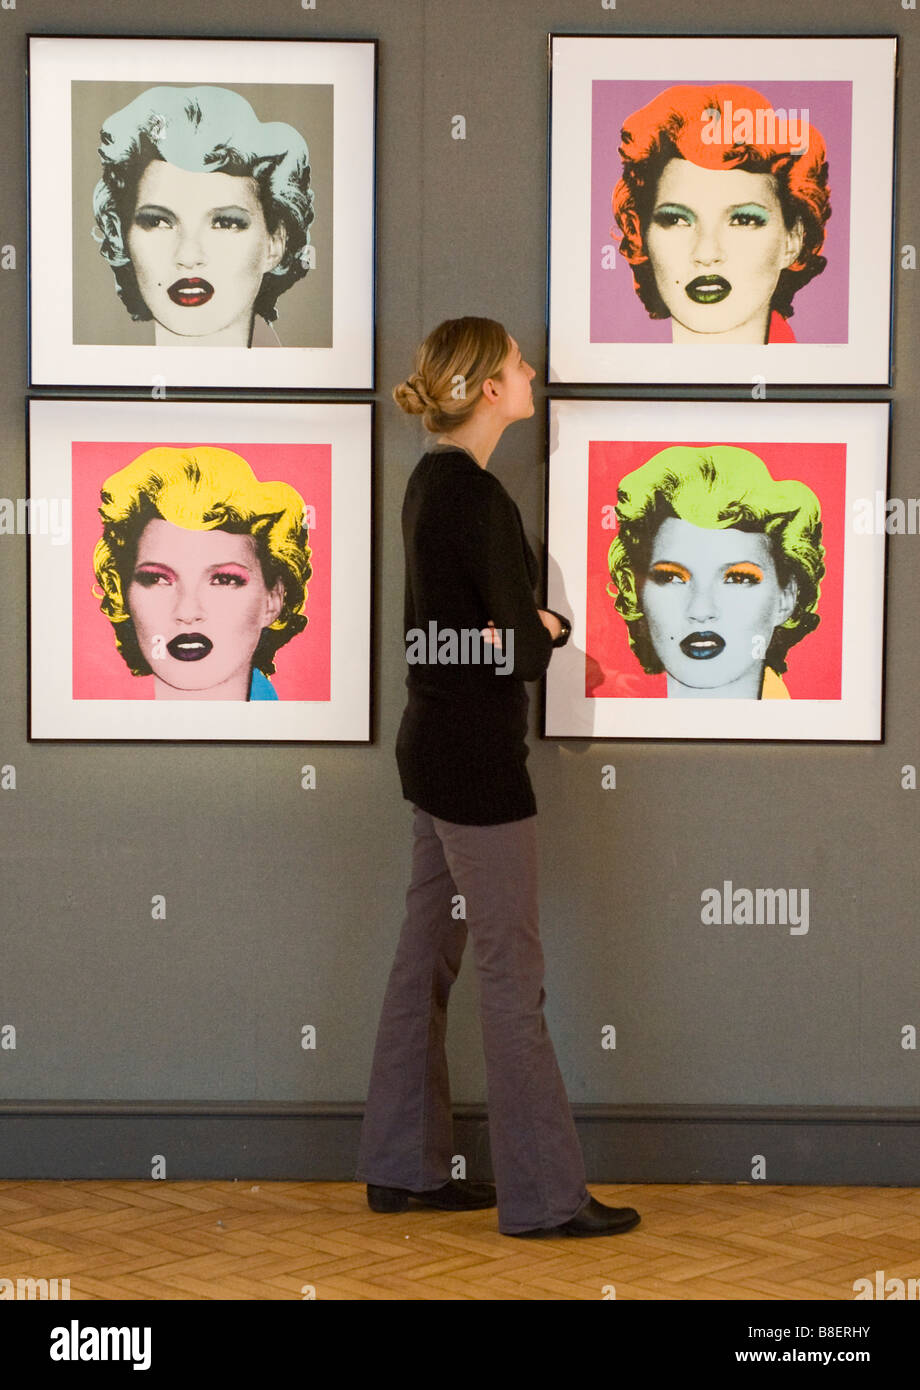 Stampa del modello Kate Moss per artista Banksy ispirato da Andy Warhol iconici immagine di Marilyn Monroe a Bonham's London Foto Stock